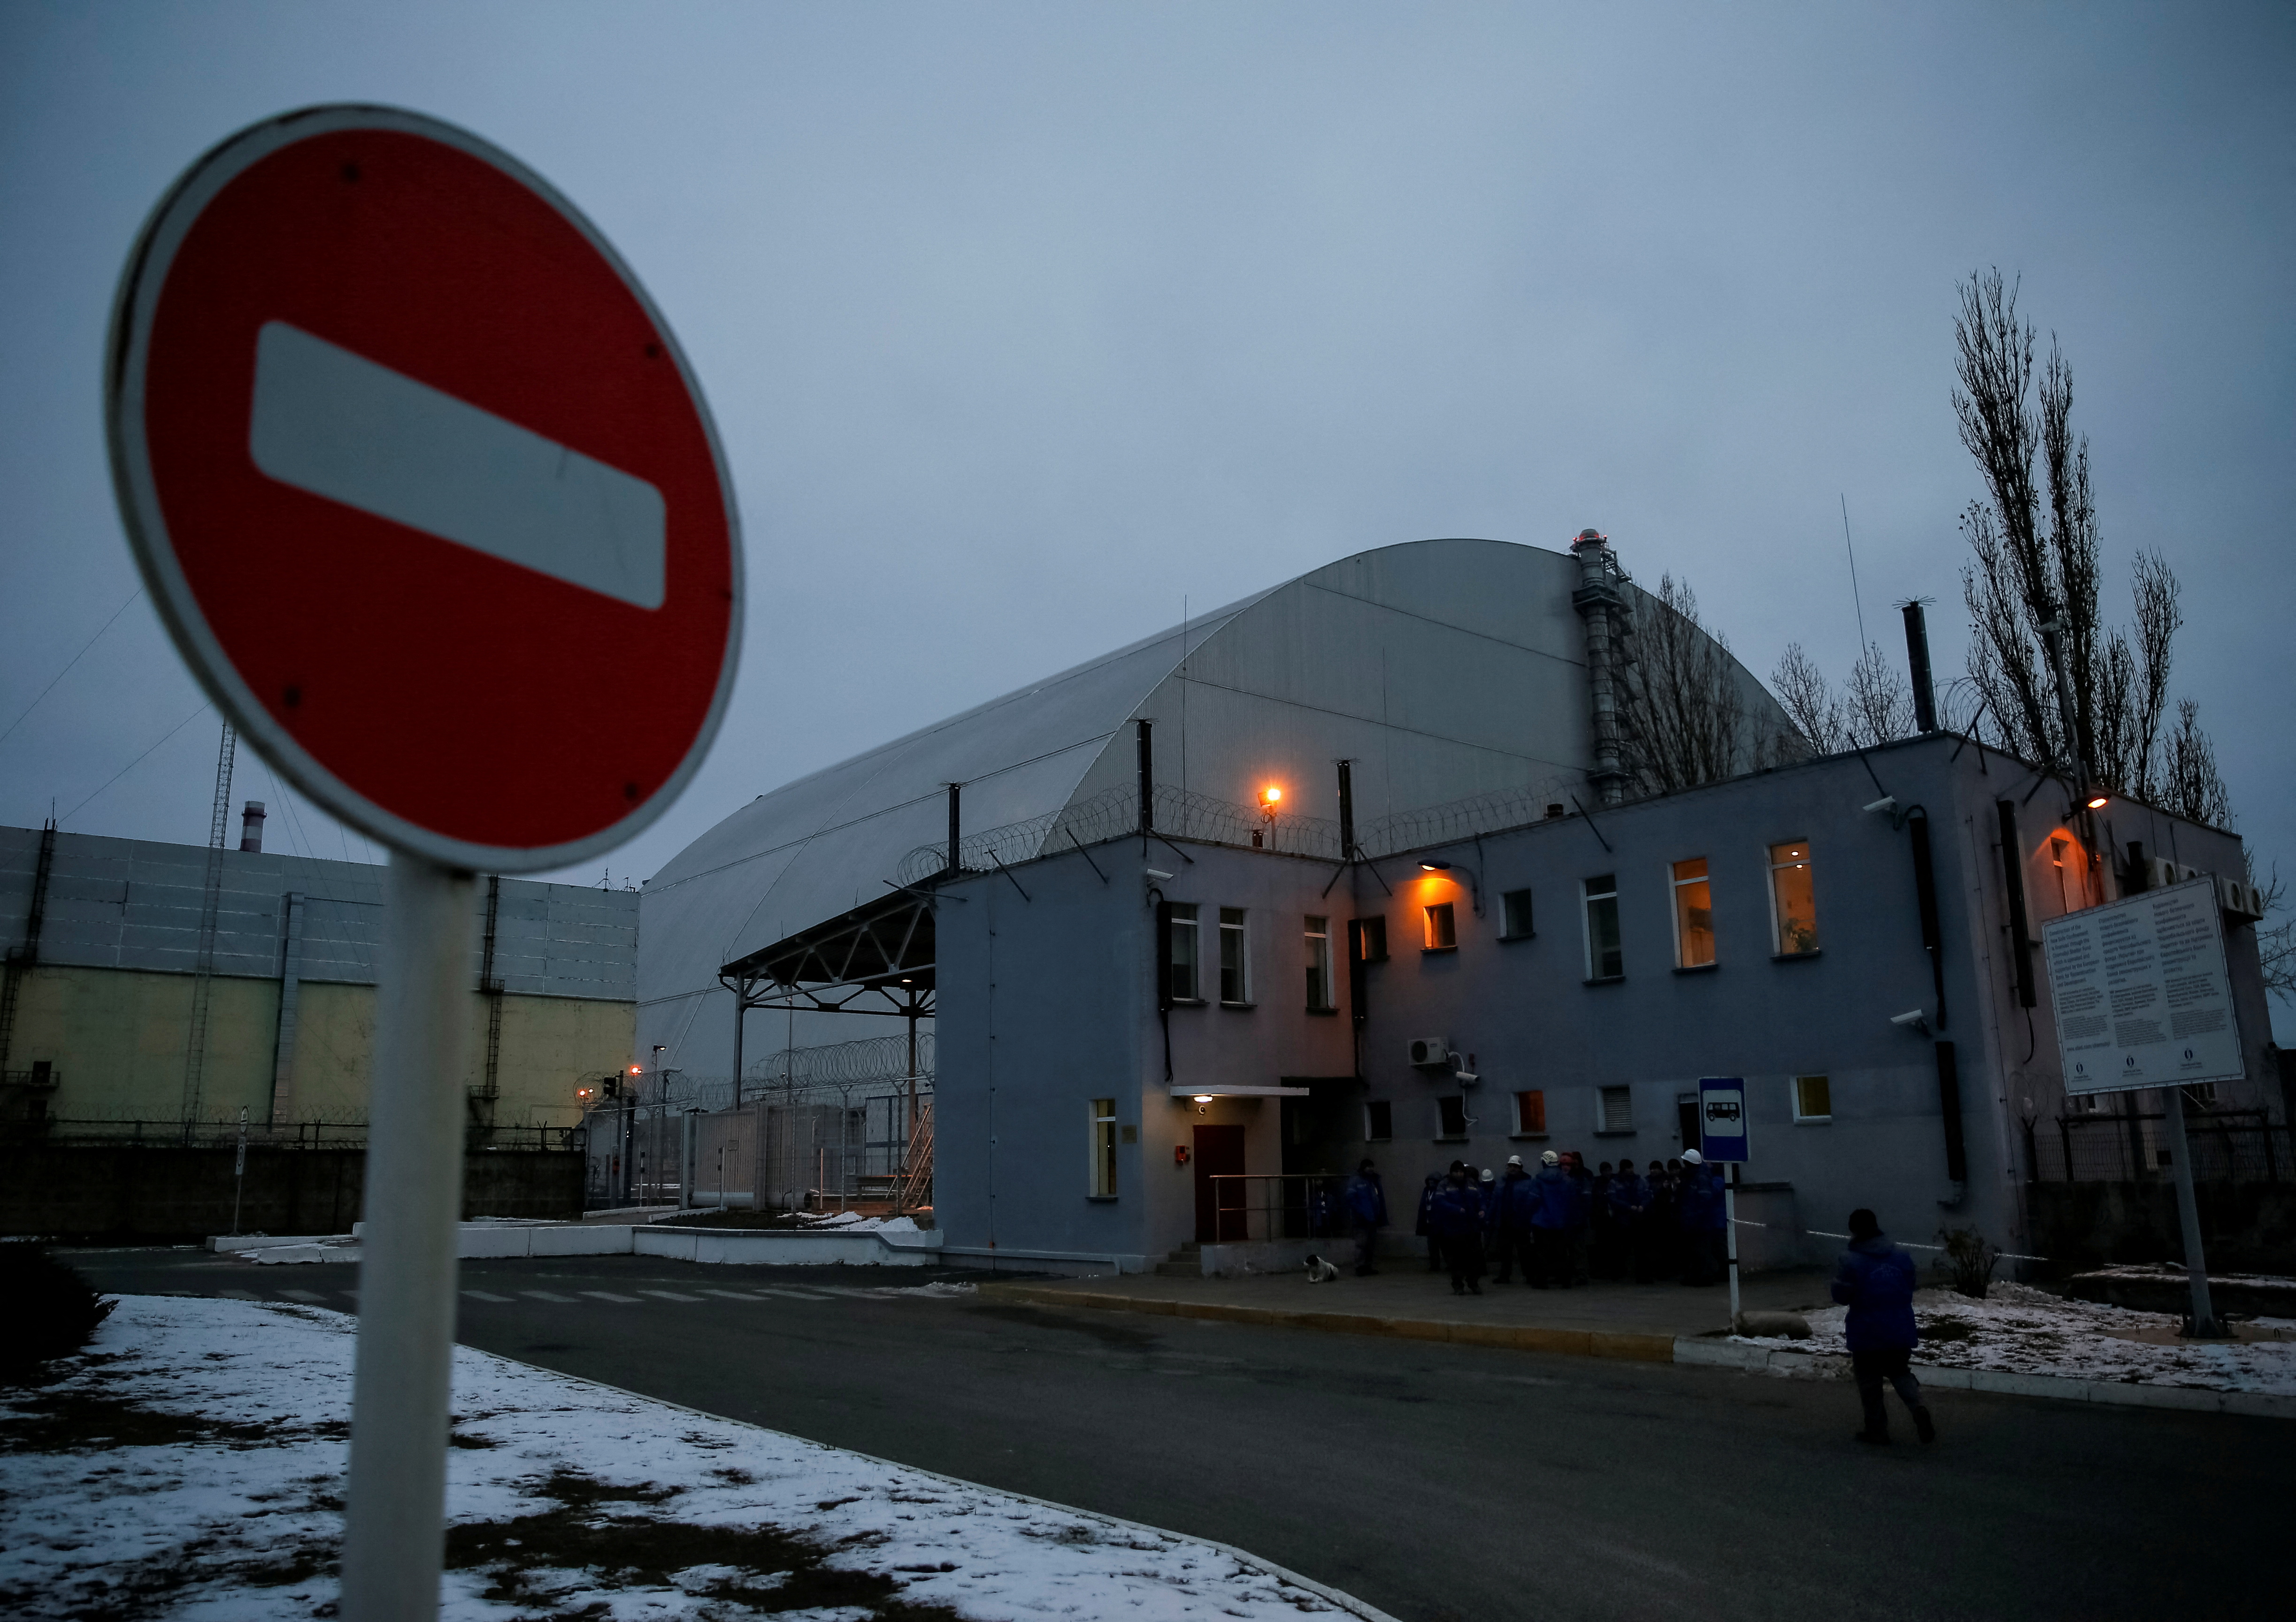 La zona bajo confinamiento de la ex central nuclar Chernobyl, en Ucrania (REUTERS/Gleb Garanich)